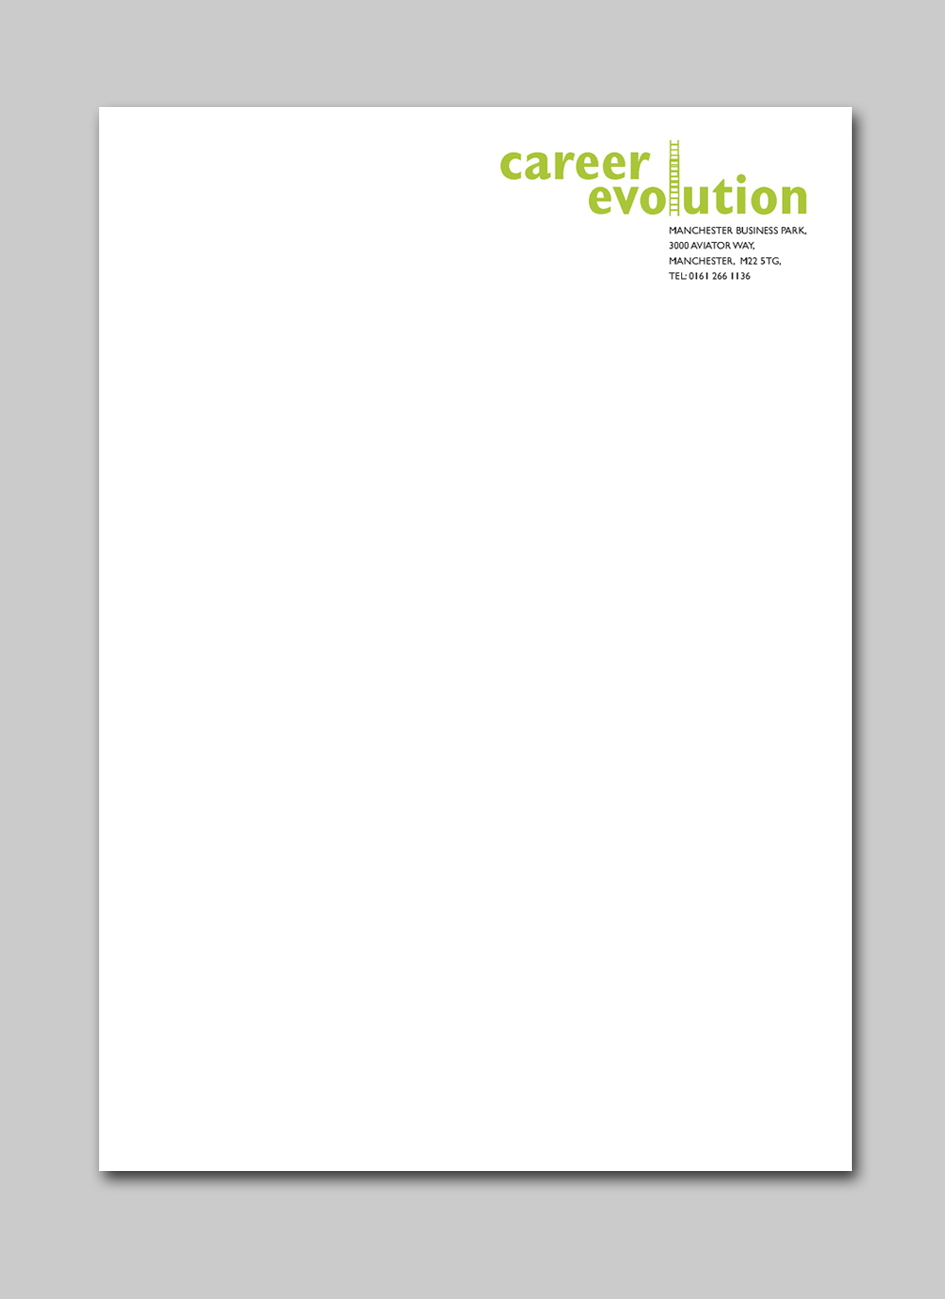 Mike Keane letterhead for Career Evolution